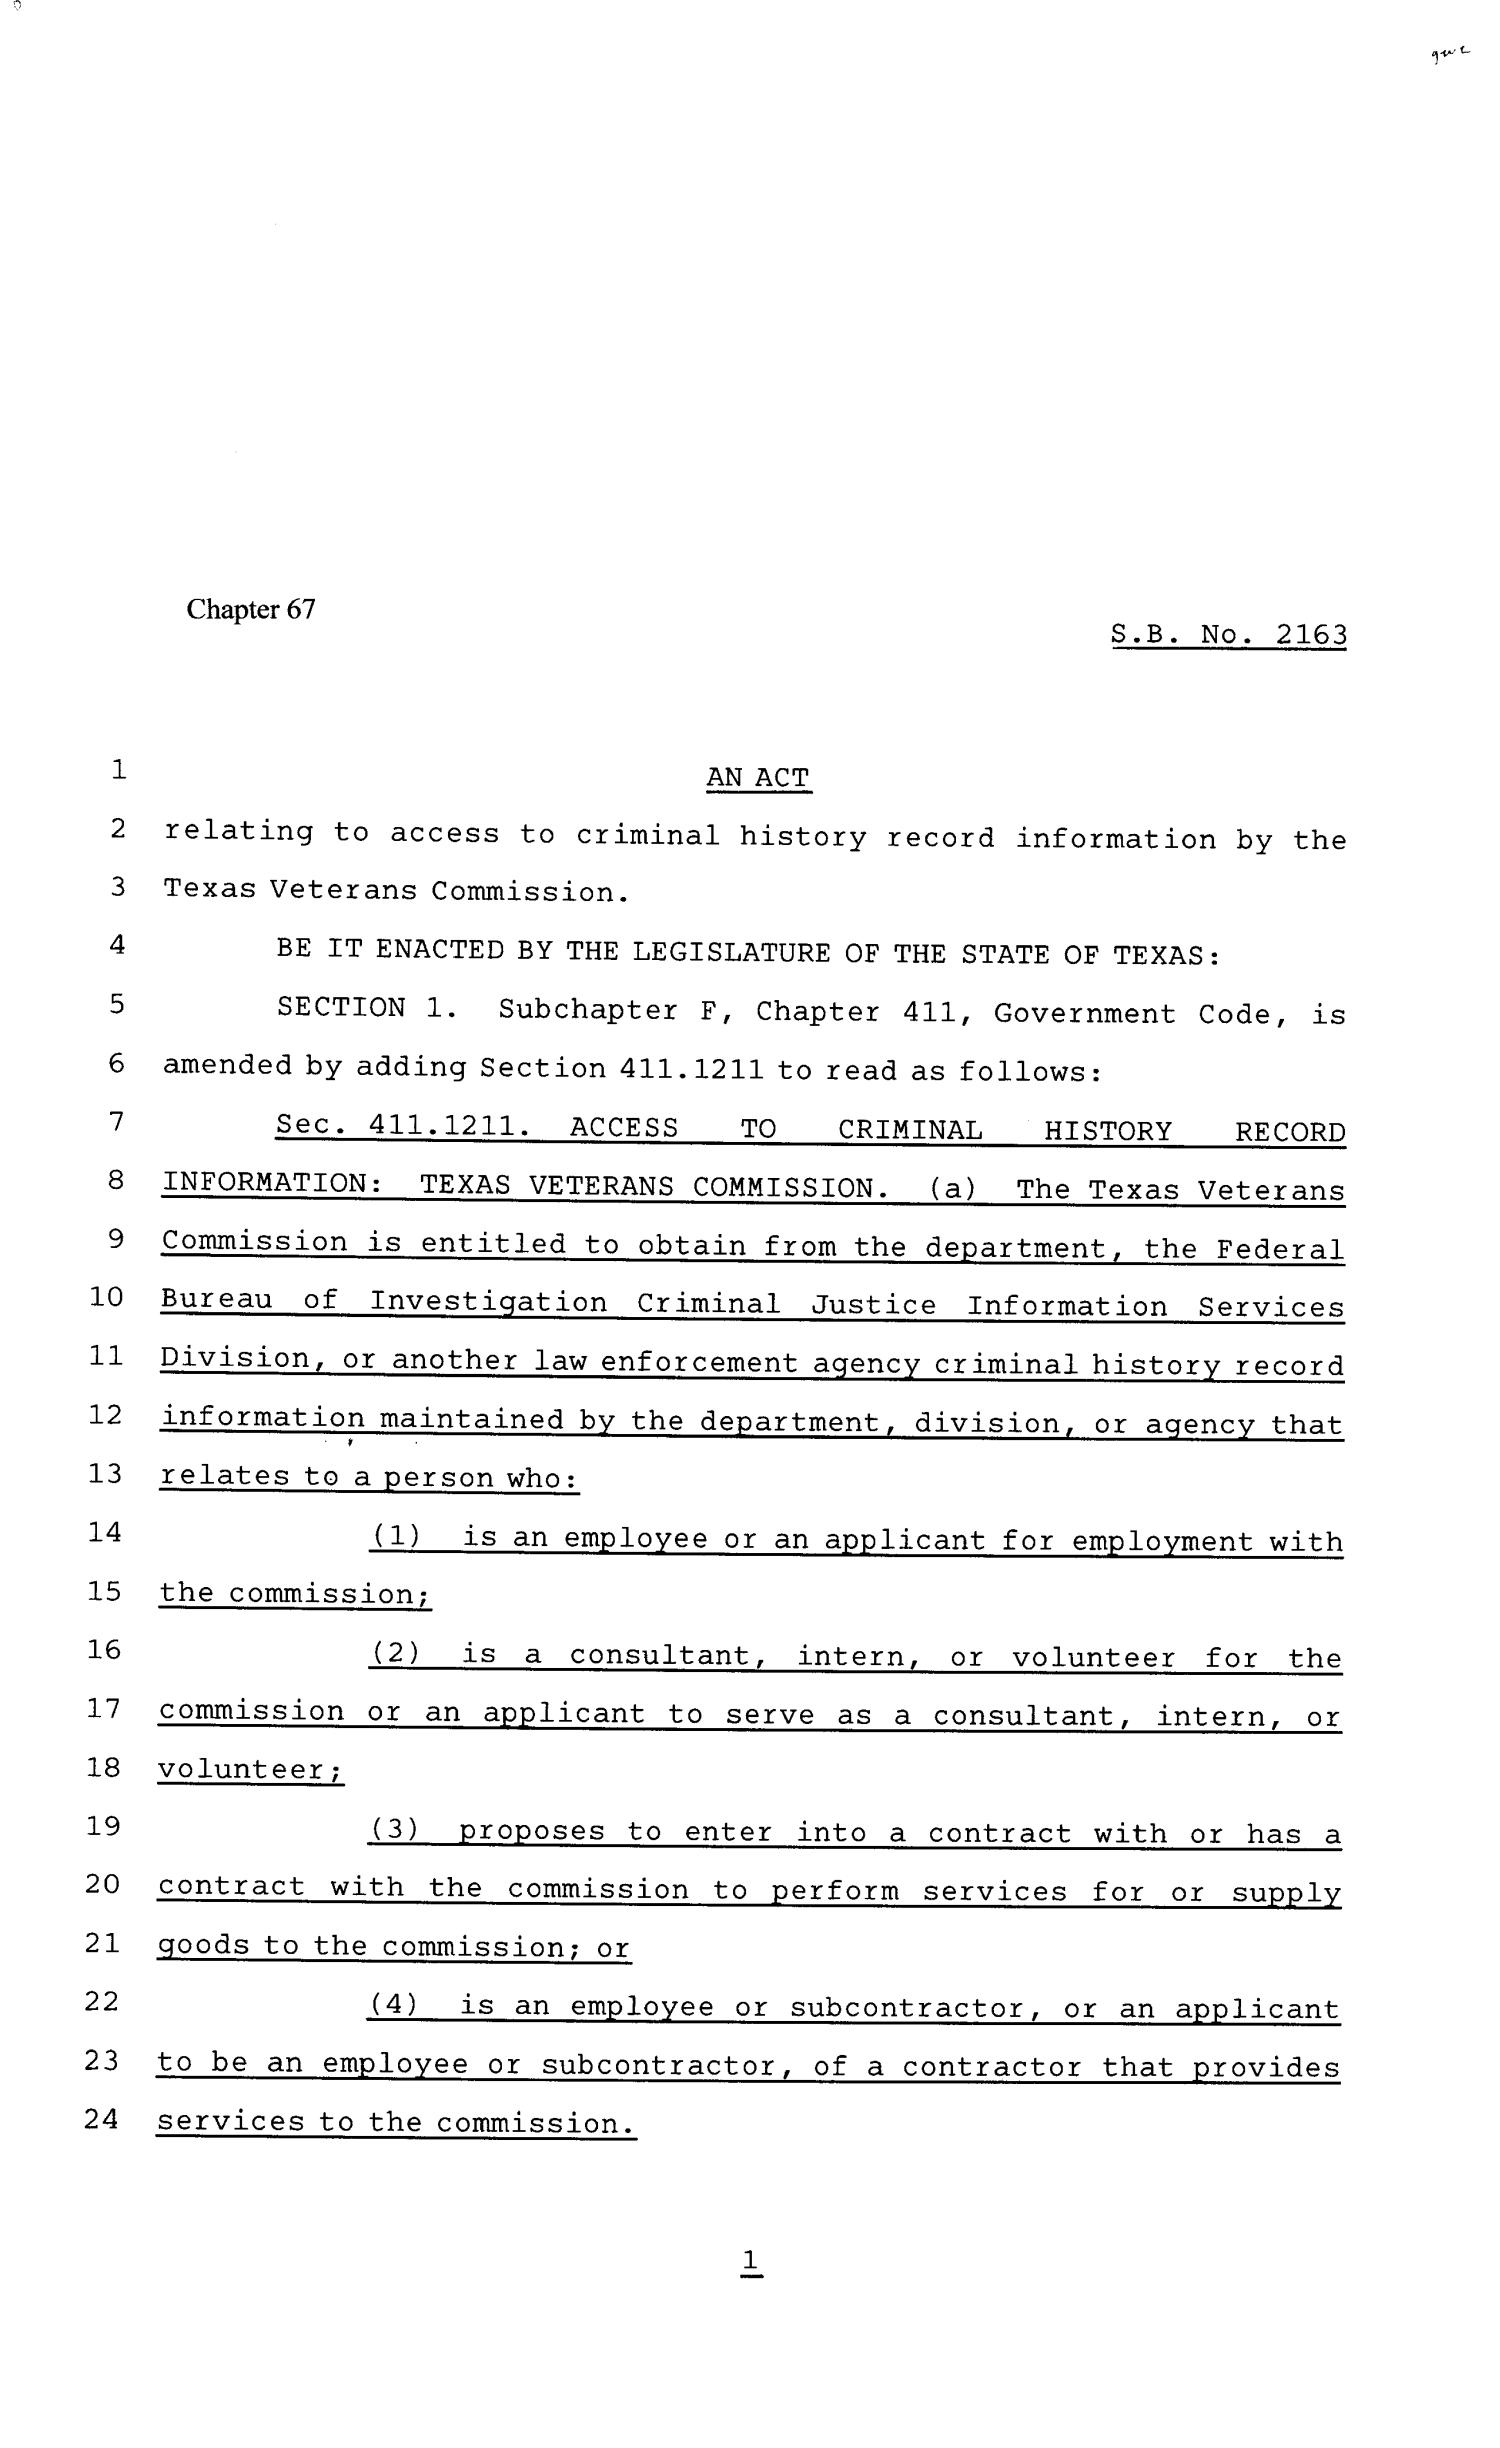 81st Texas Legislature, Senate Bill 2163, Chapter 67
                                                
                                                    [Sequence #]: 1 of 3
                                                